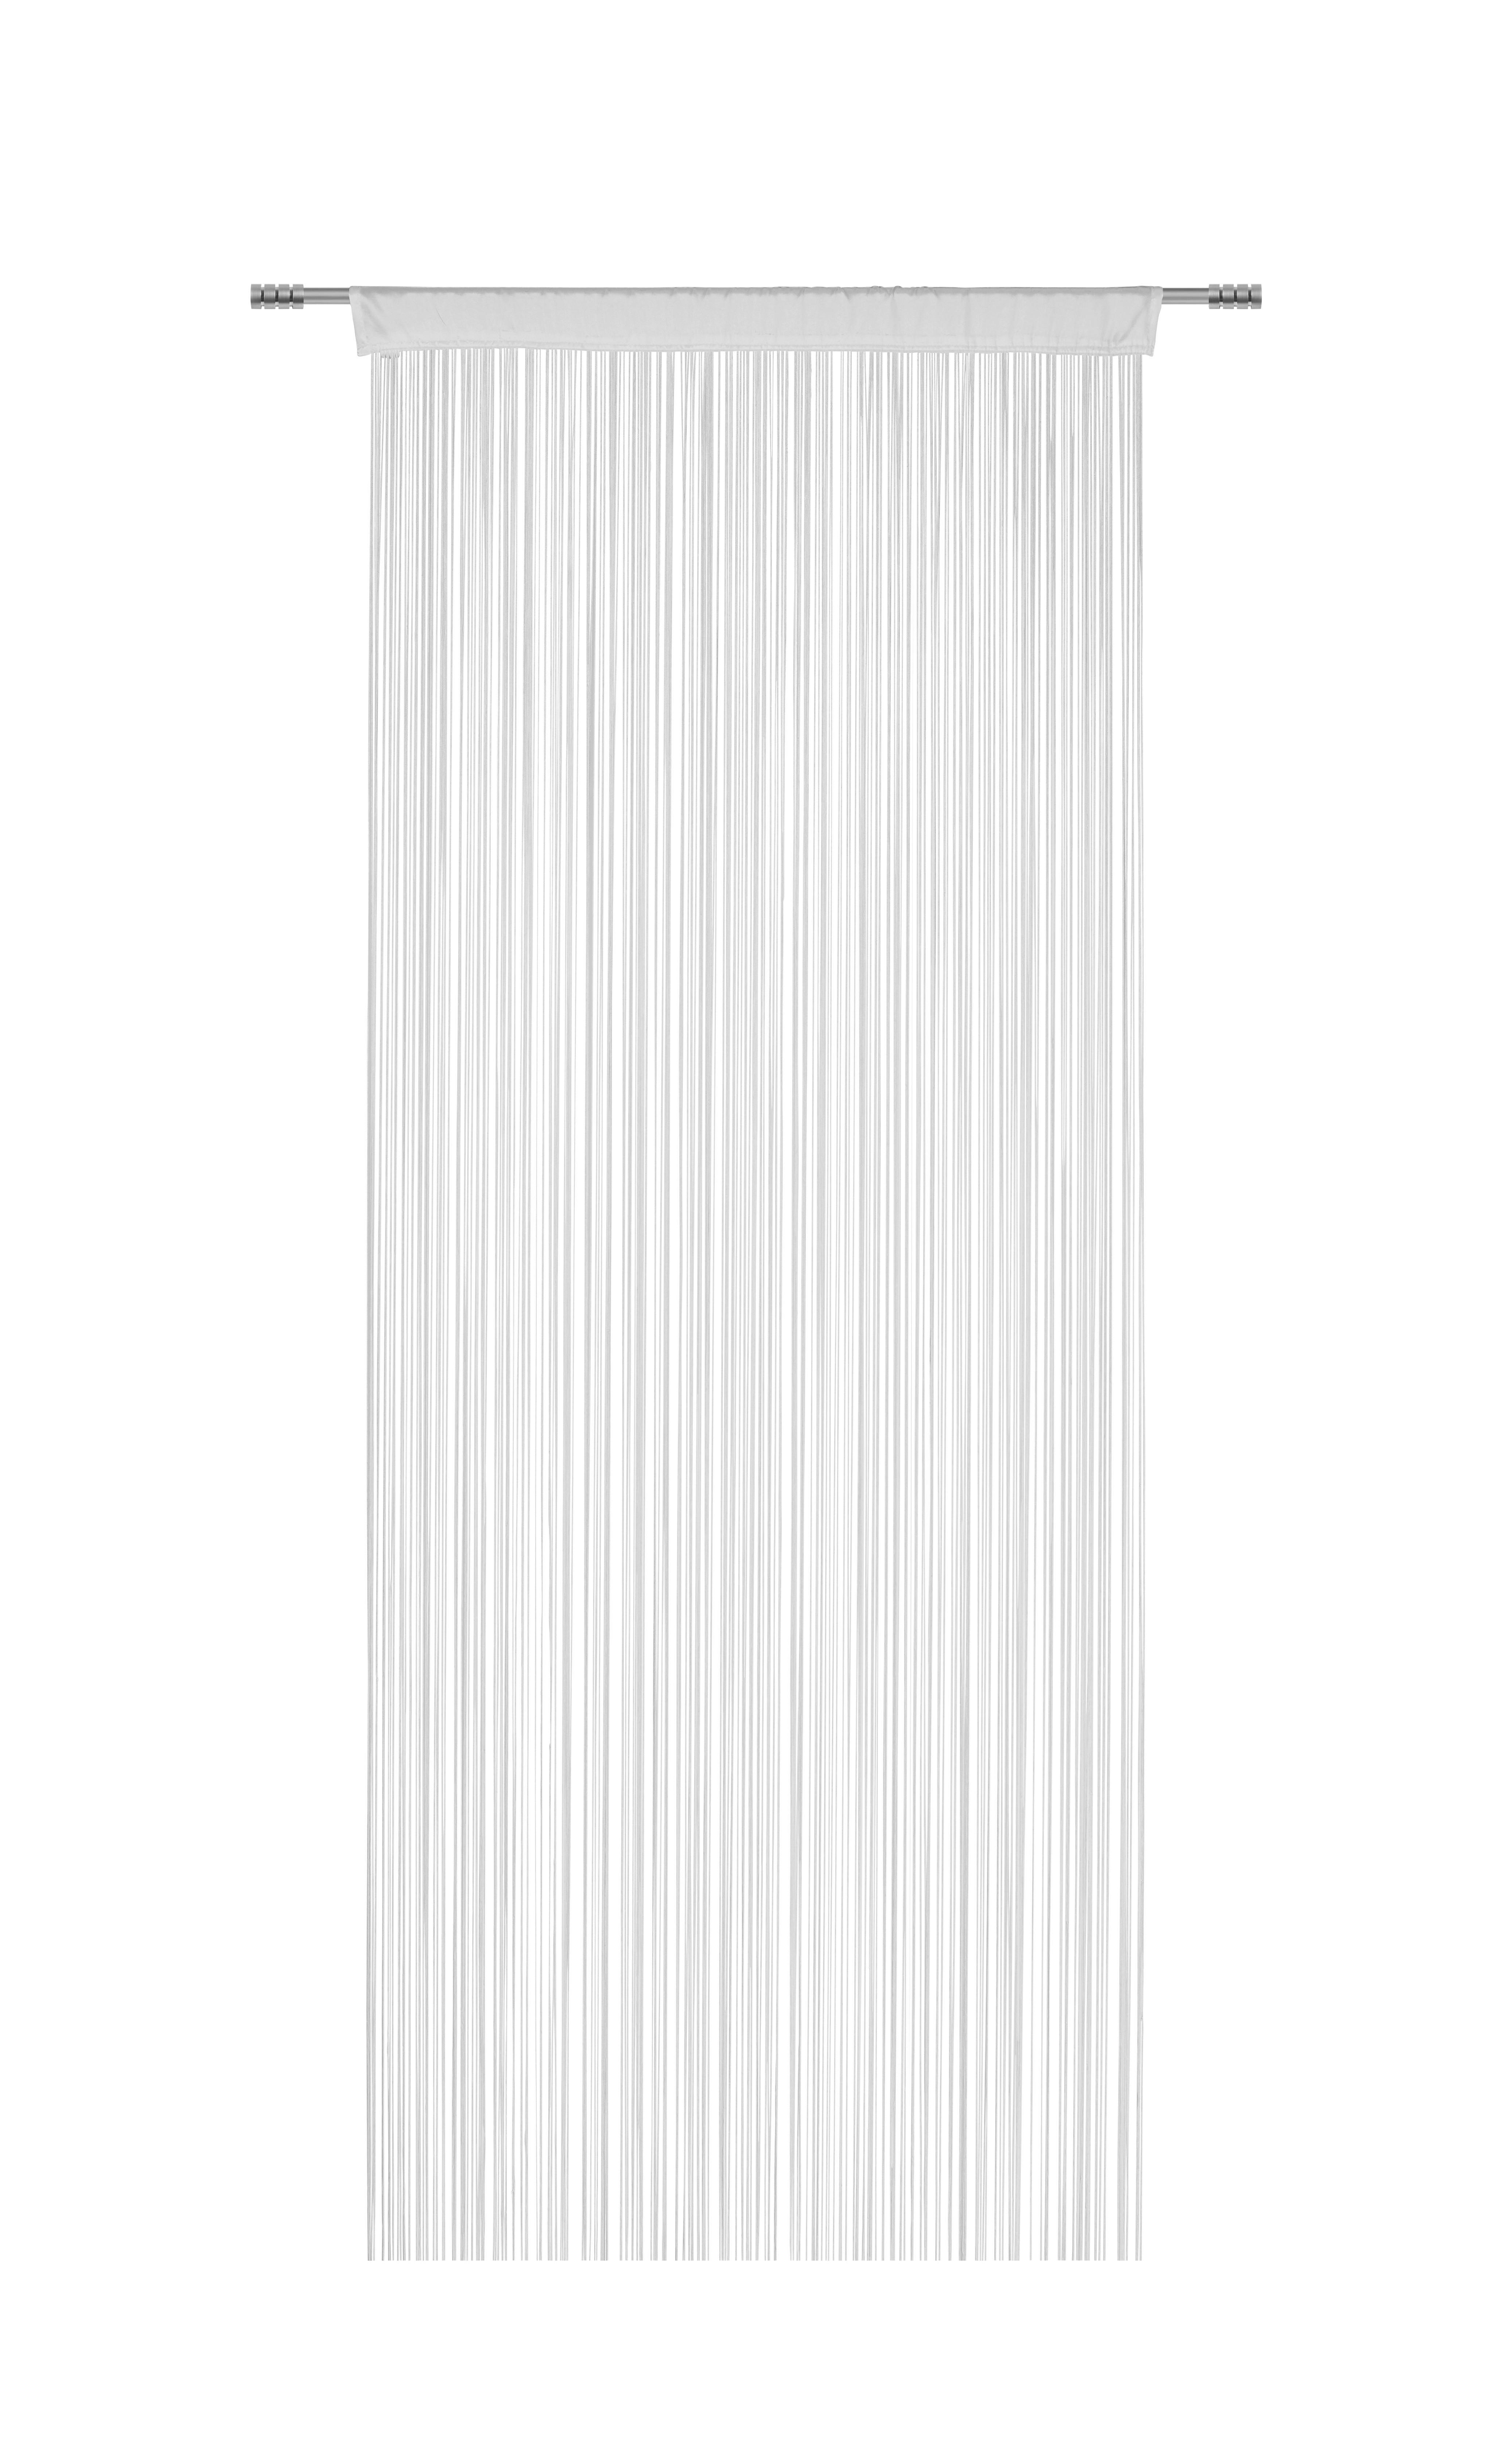 Zsinórfüggöny Promotion 90/200cm - Fehér, konvencionális, Textil (90/200cm) - Based